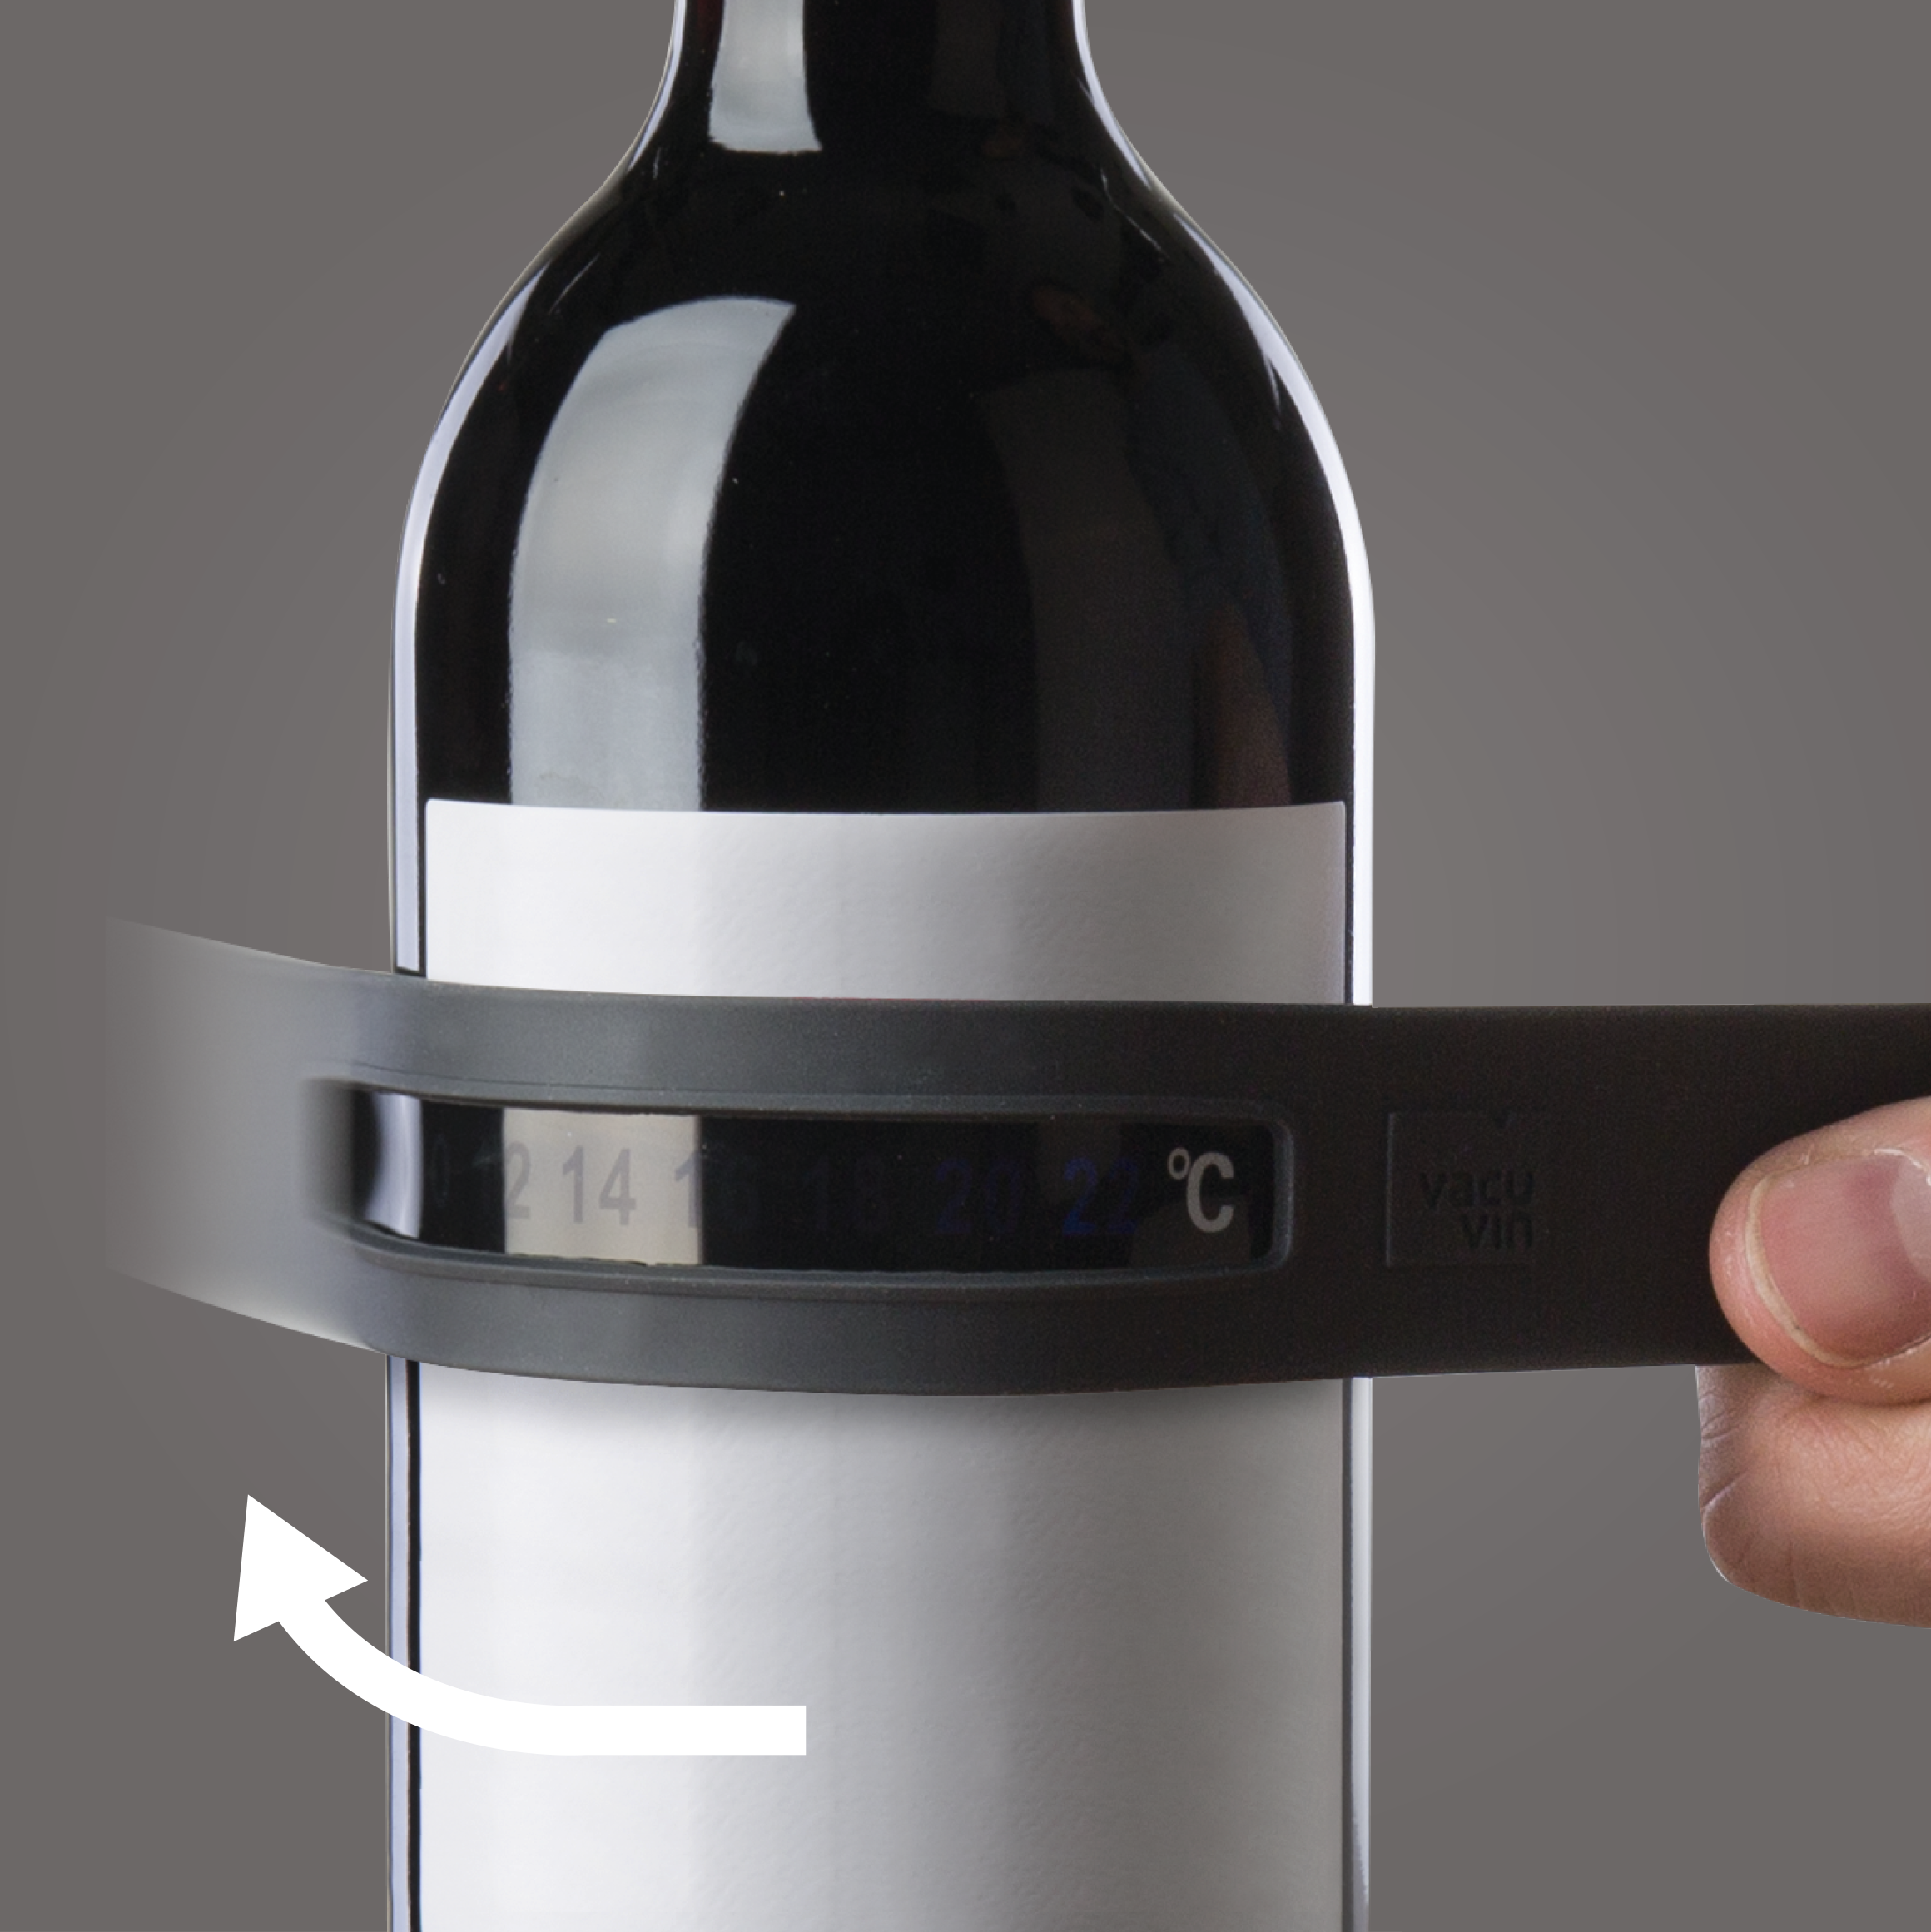 Thermomètre bouteille vin